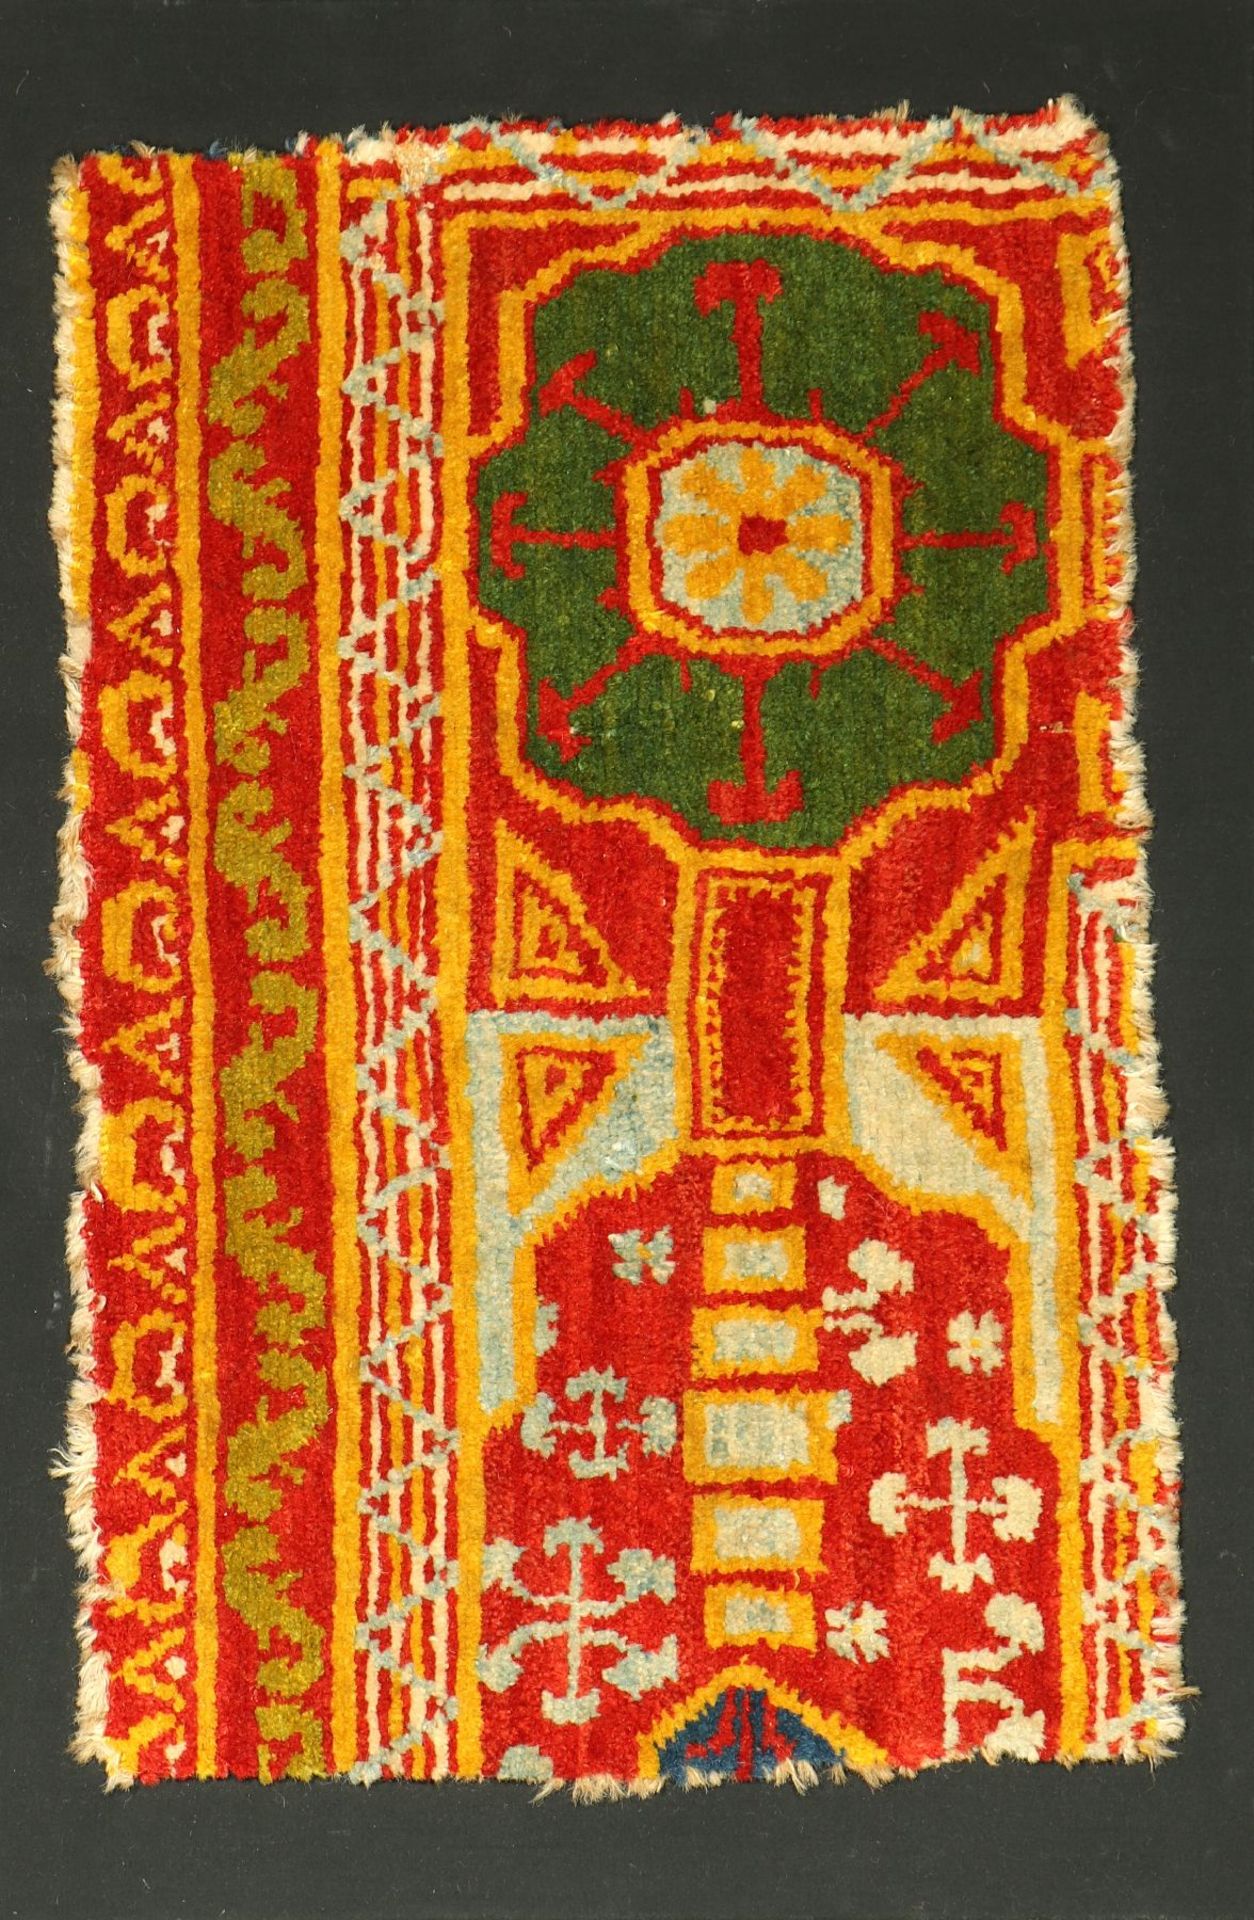 Spanischer Teppich antik (Fragment), Spanien, um 1900, Wolle geknüpft auf Baumwolle. Fragment